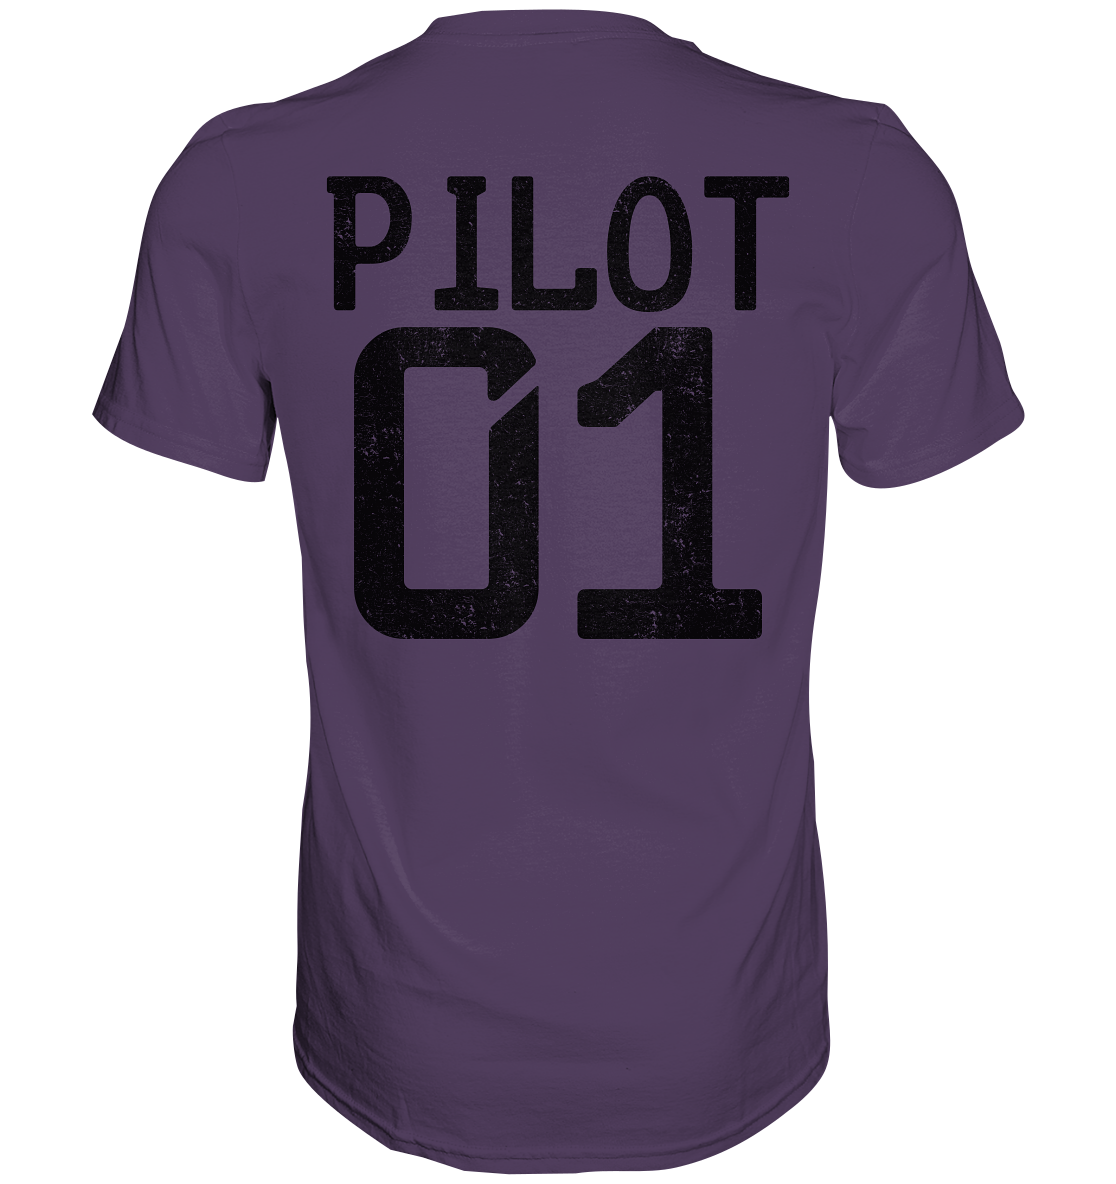 PS_Pilot01_B Organic Shirt